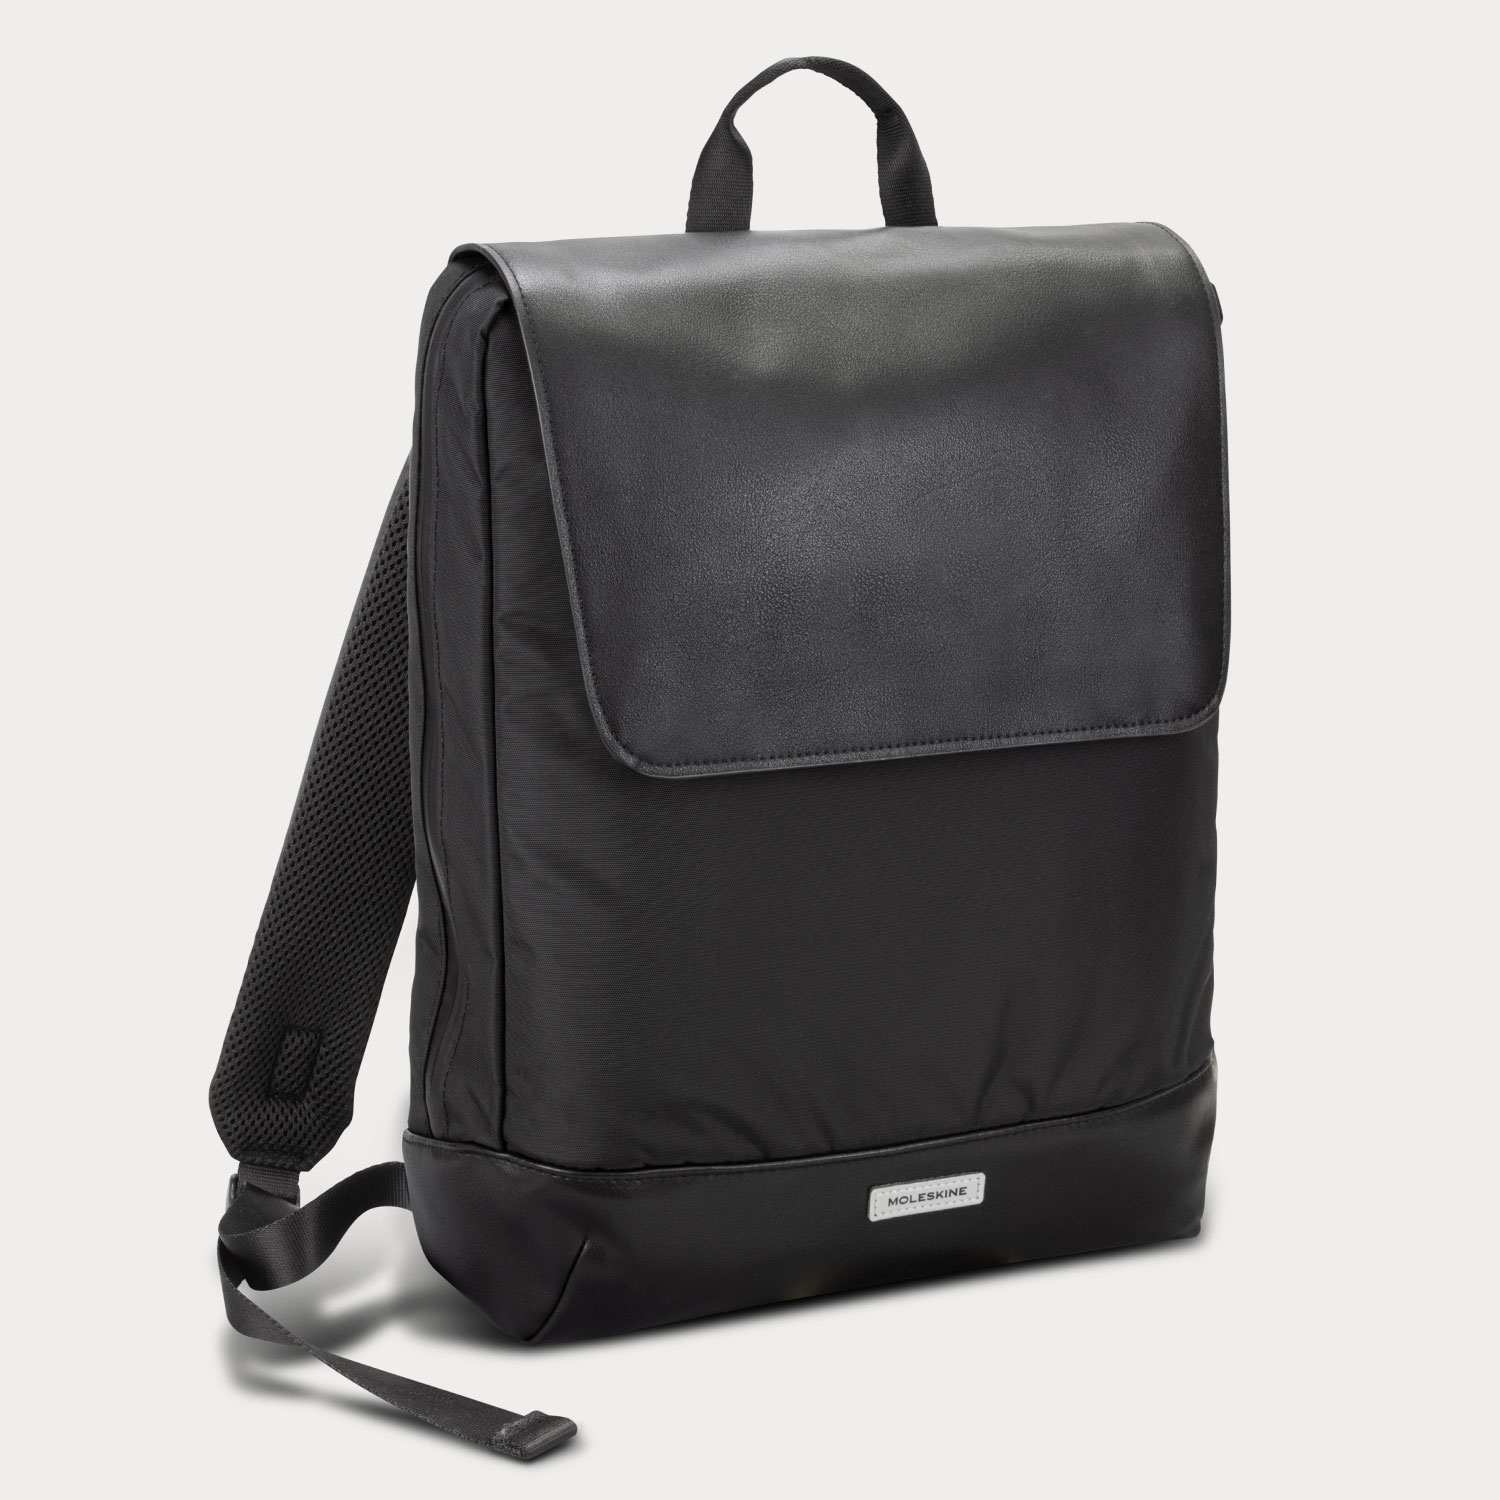 Moleskine Metro Slim Backpack | PrimoProducts